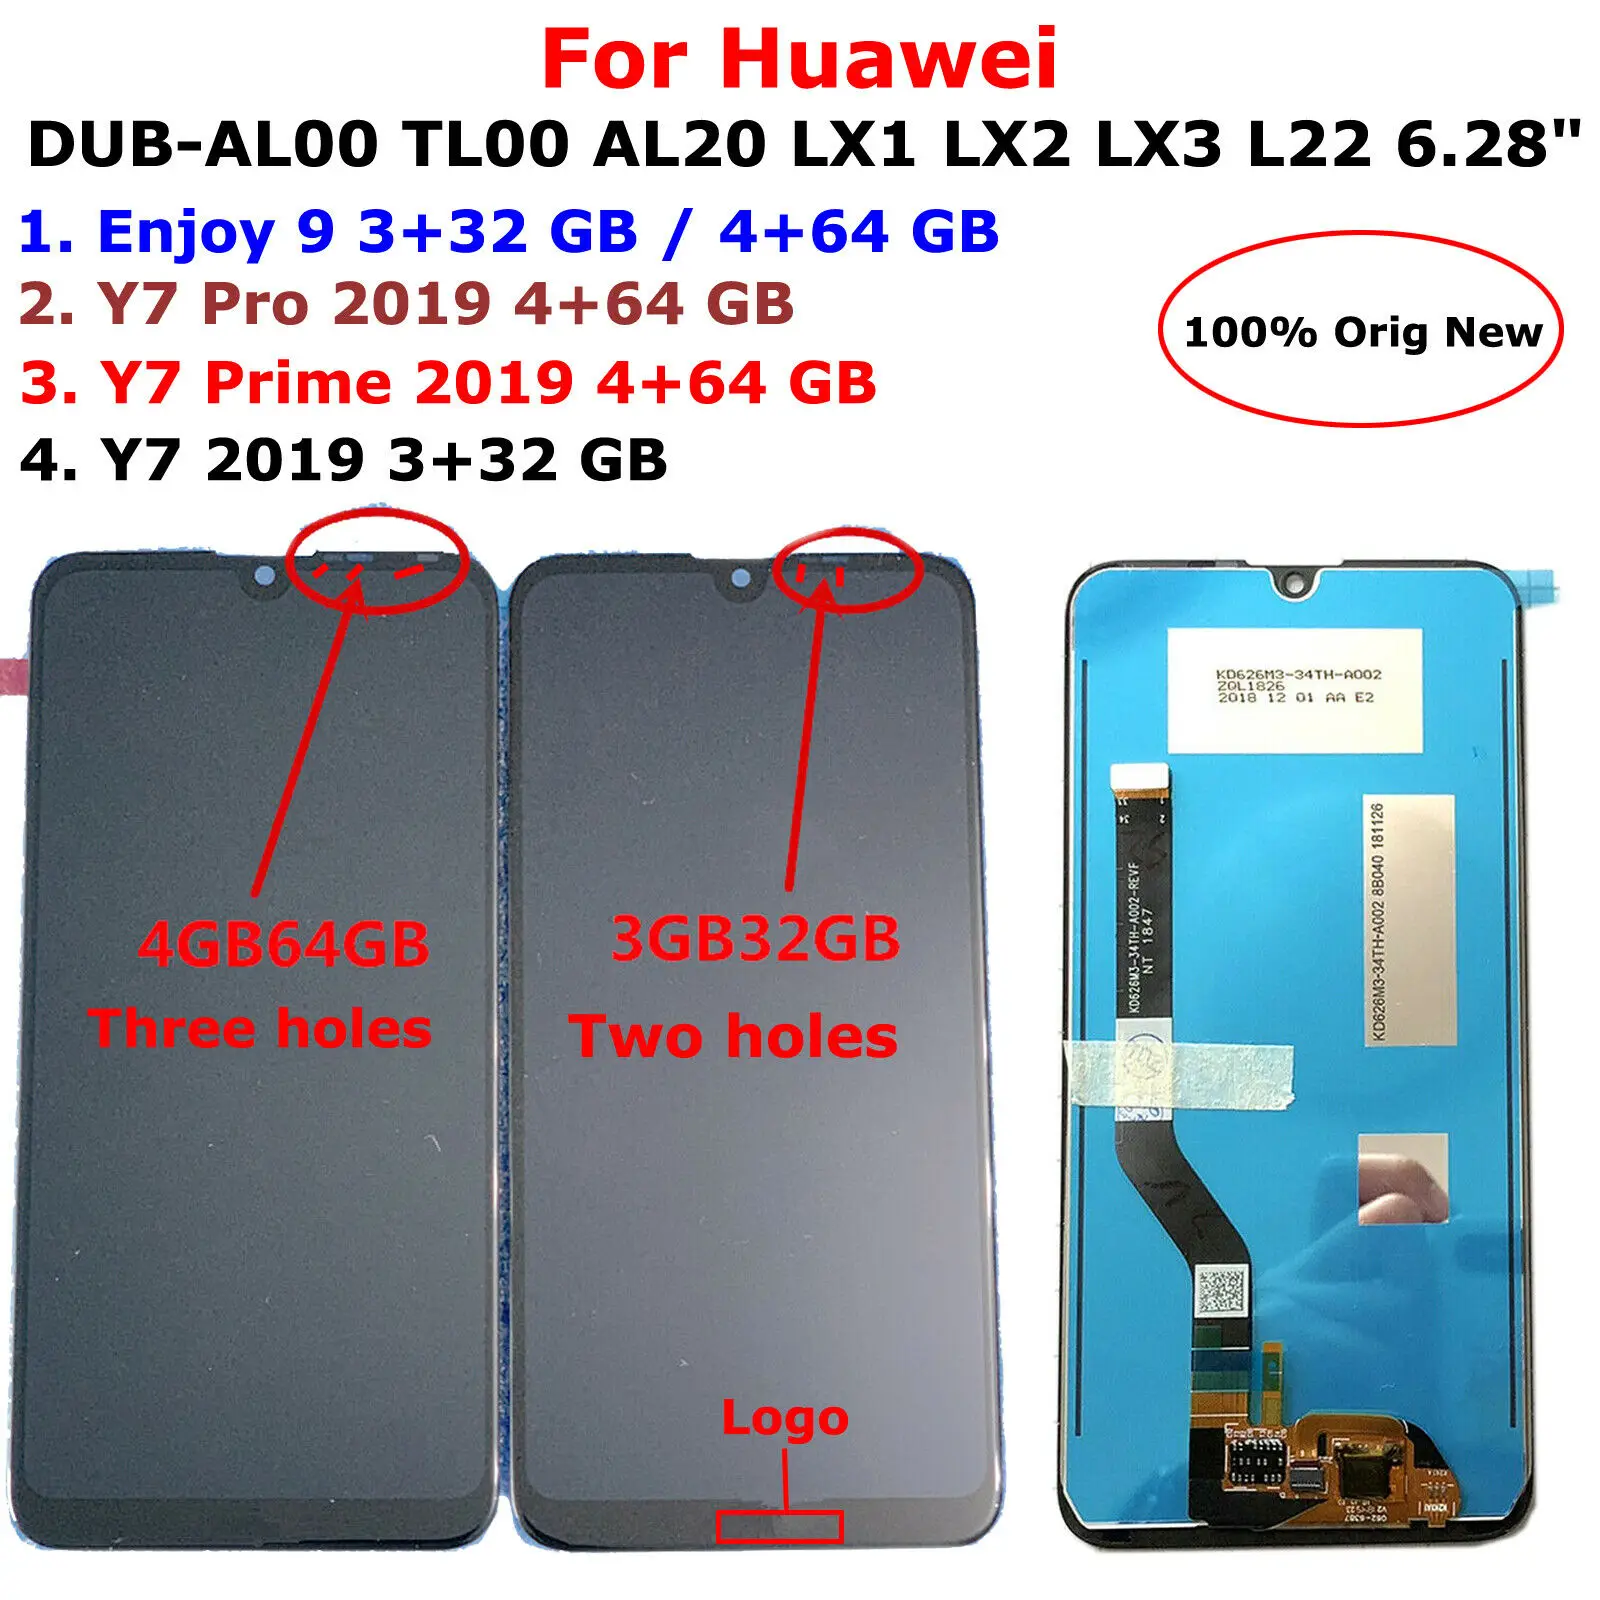 Купи Оригинальный сенсорный ЖК-дисплей 6, 28 дюйма для Huawei Enjoy 9/Y7 /Y7 Prime /Y7 Pro 2019 DUB-AL00 TL00 AL20 LX1 LX2 LX3 L22 за 1,739 рублей в магазине AliExpress